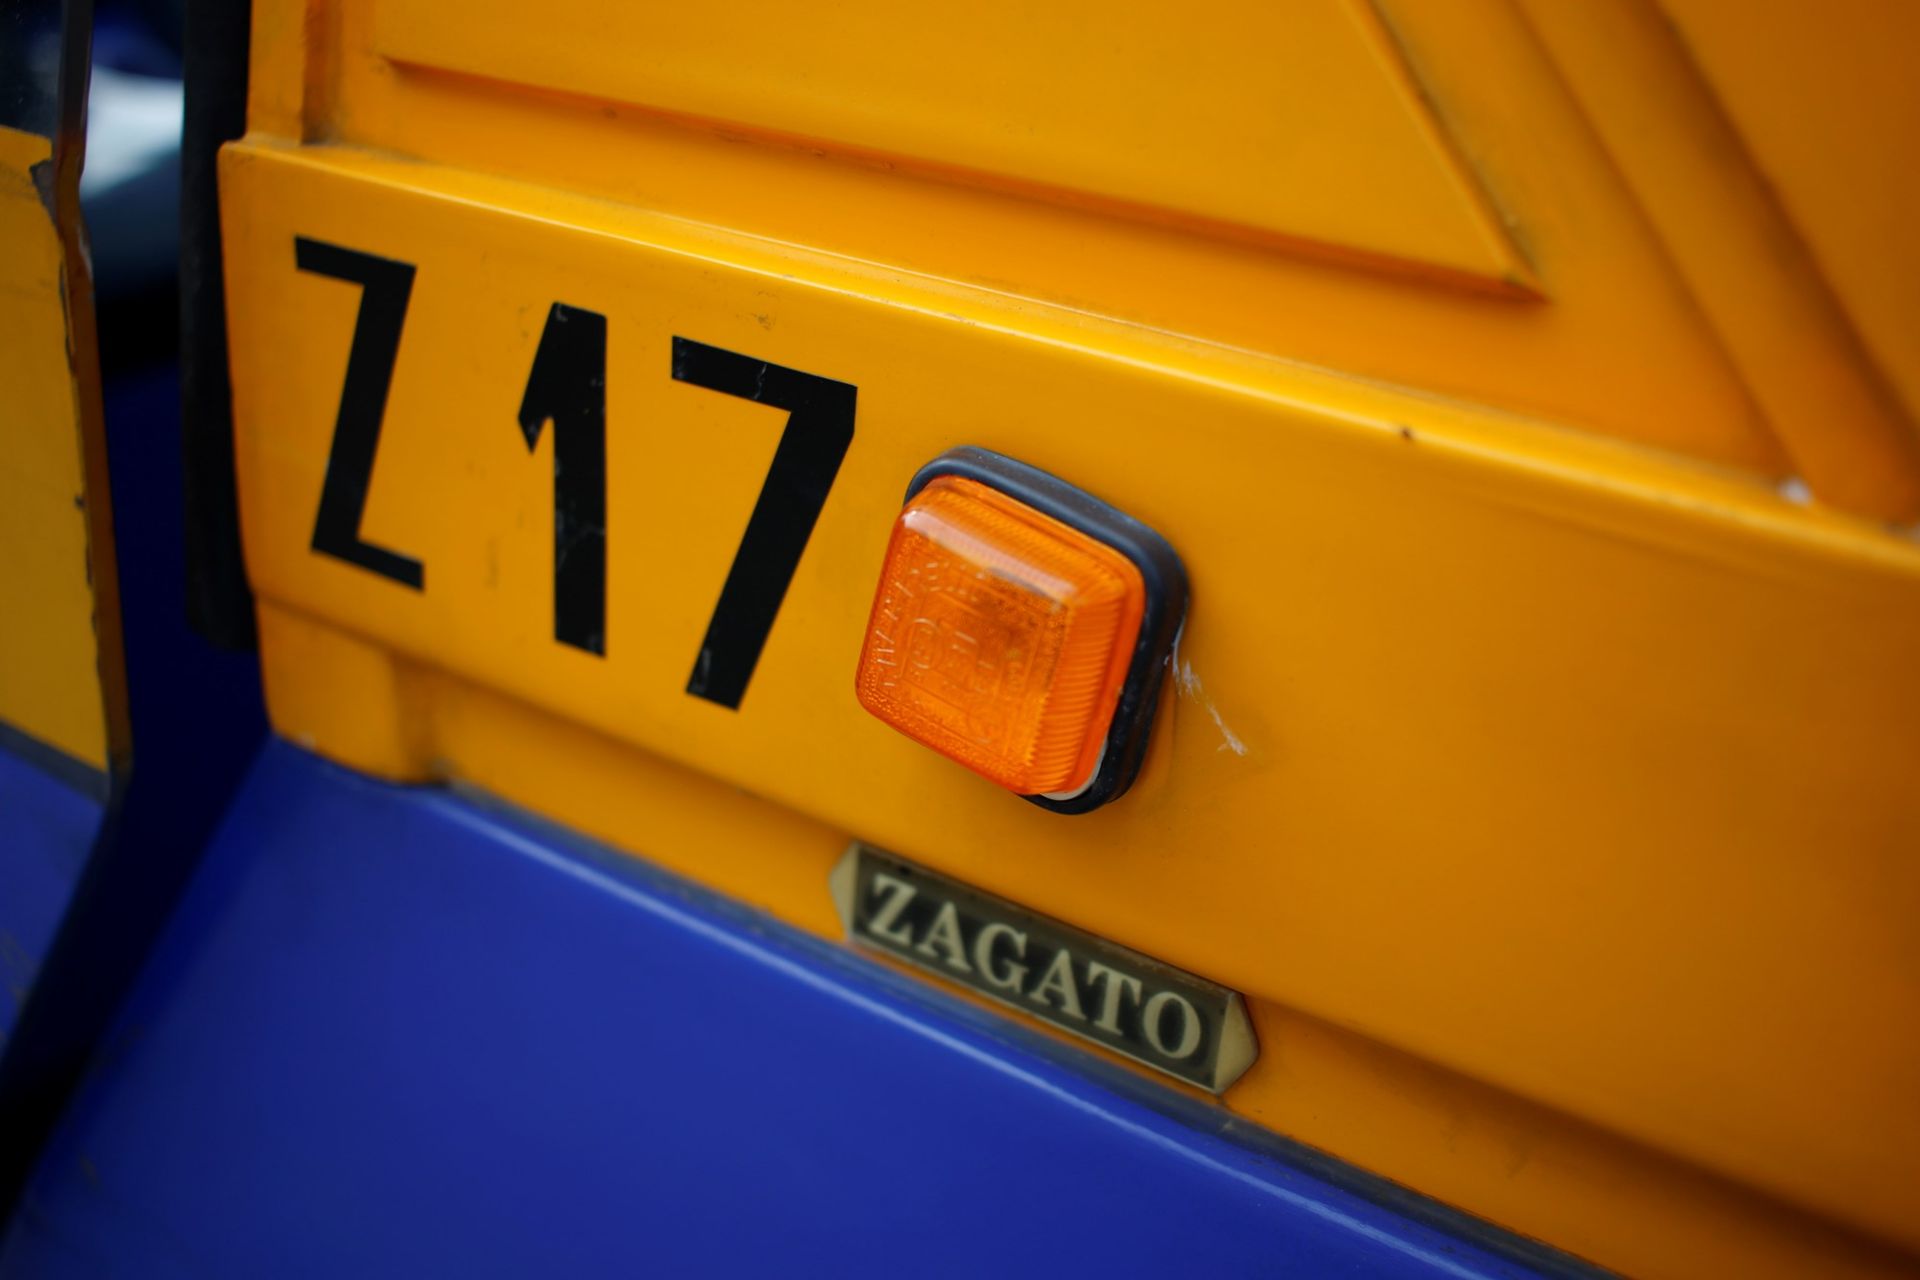 1989 Zagato MILANINA (ZAGATO) - Image 5 of 28